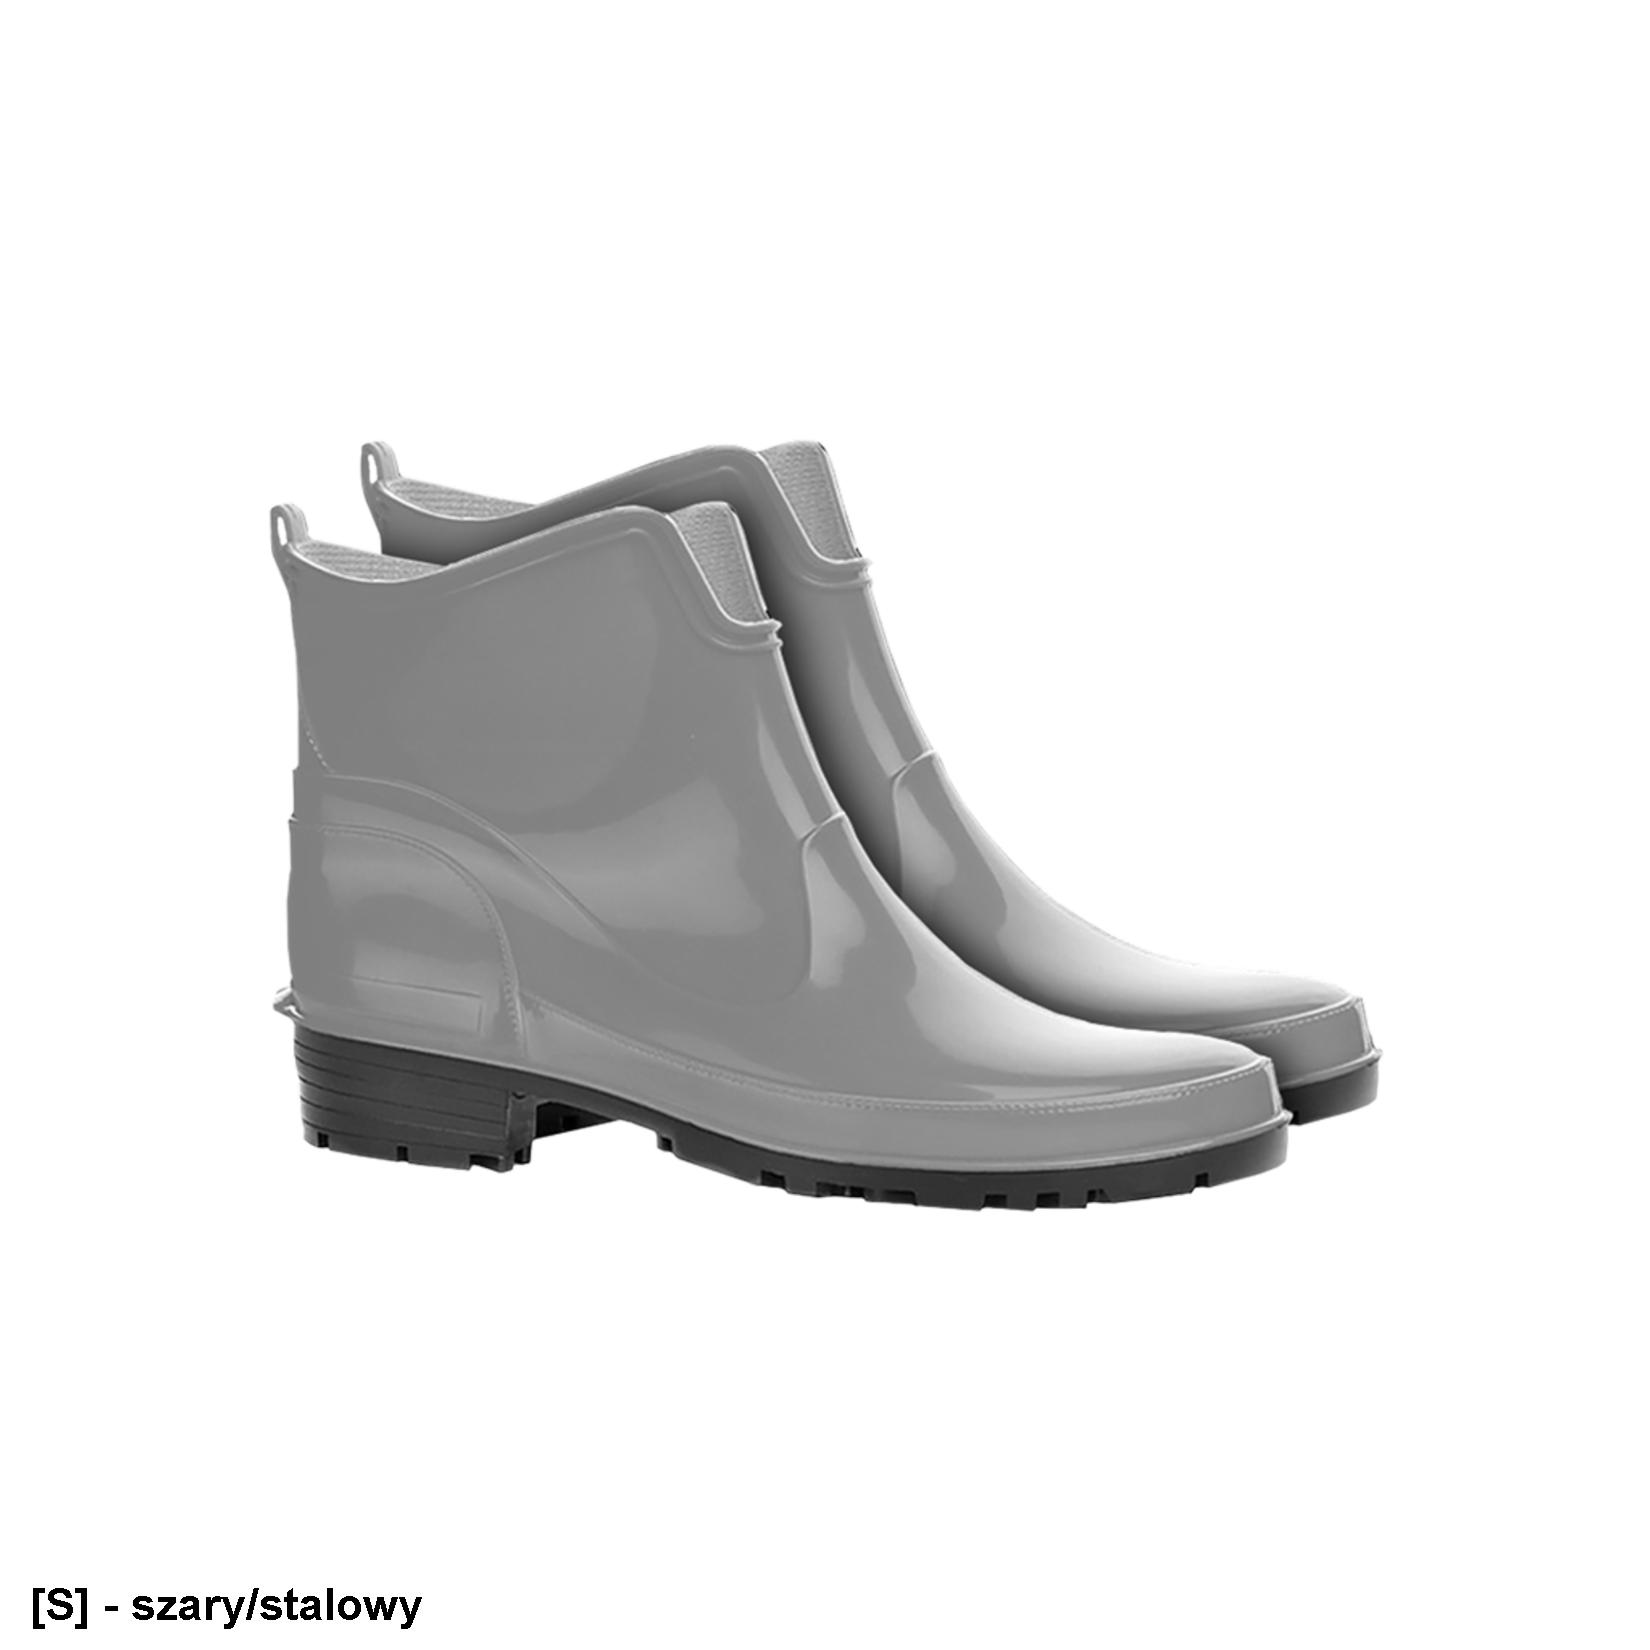 BLELKE - buty damskie krótkie typu kalosz ELKE, PCV, damskie, wodoszczelne - 2 kolory - 36-42.